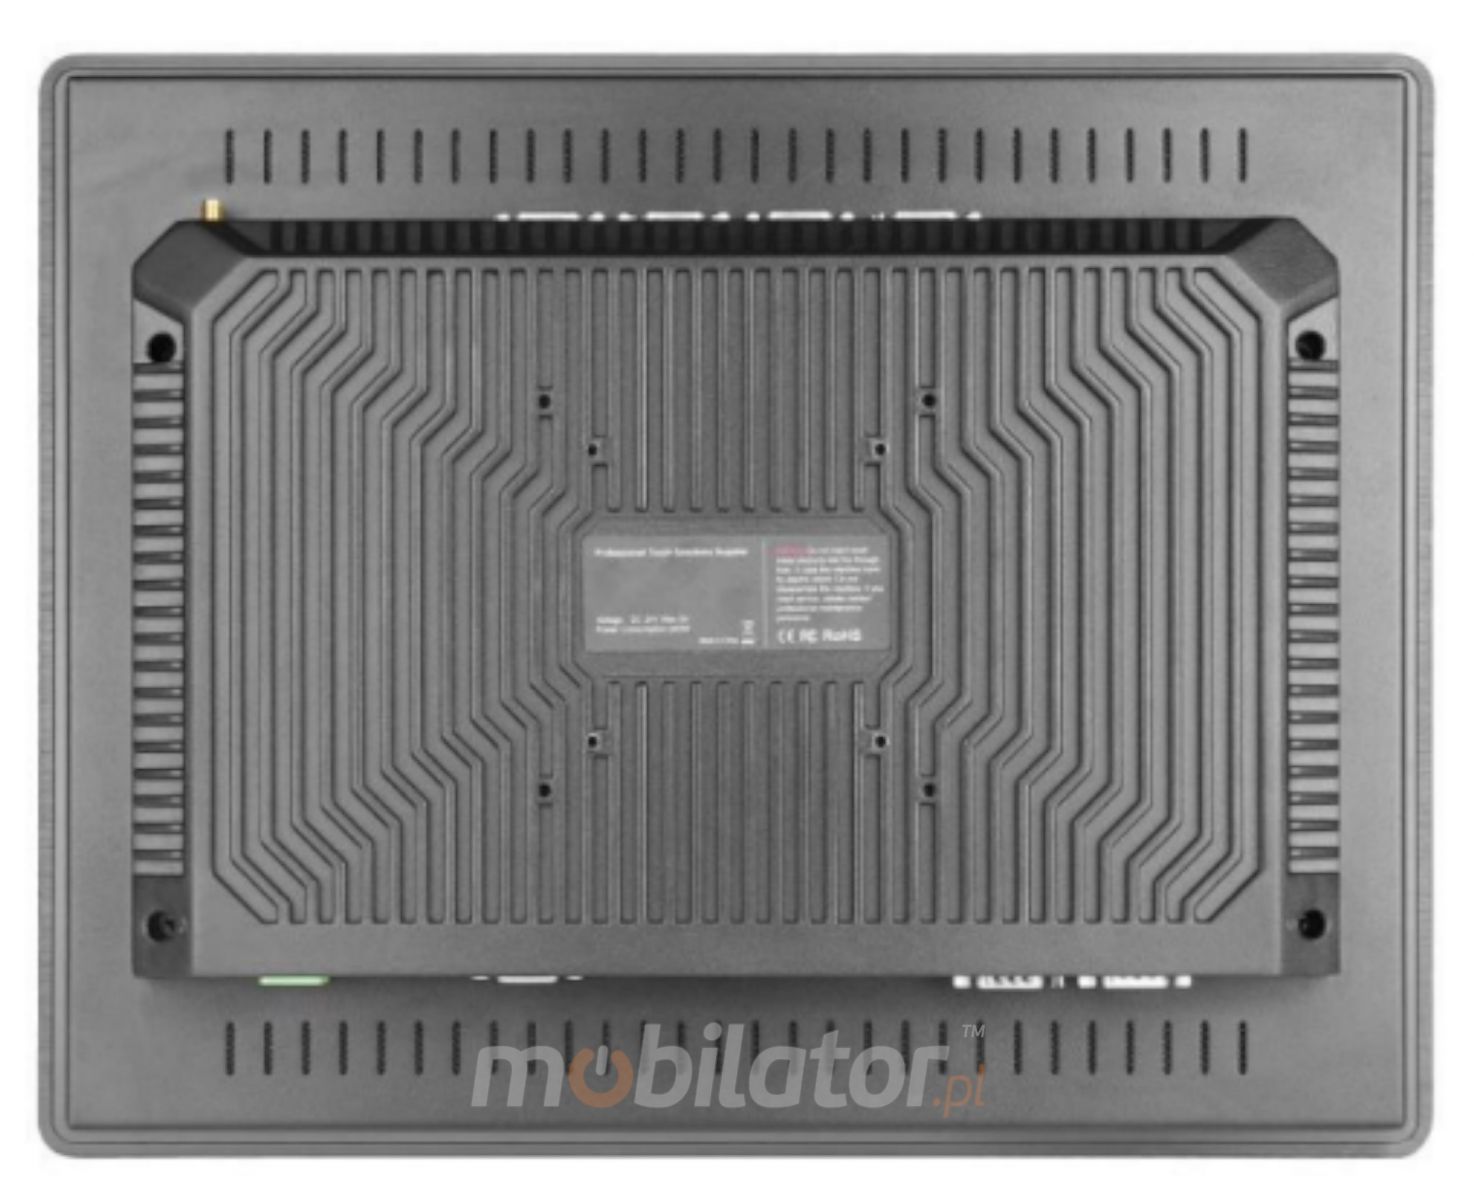 ty pojemnociowego panela BIBOX-150PC2 z chodzeniem